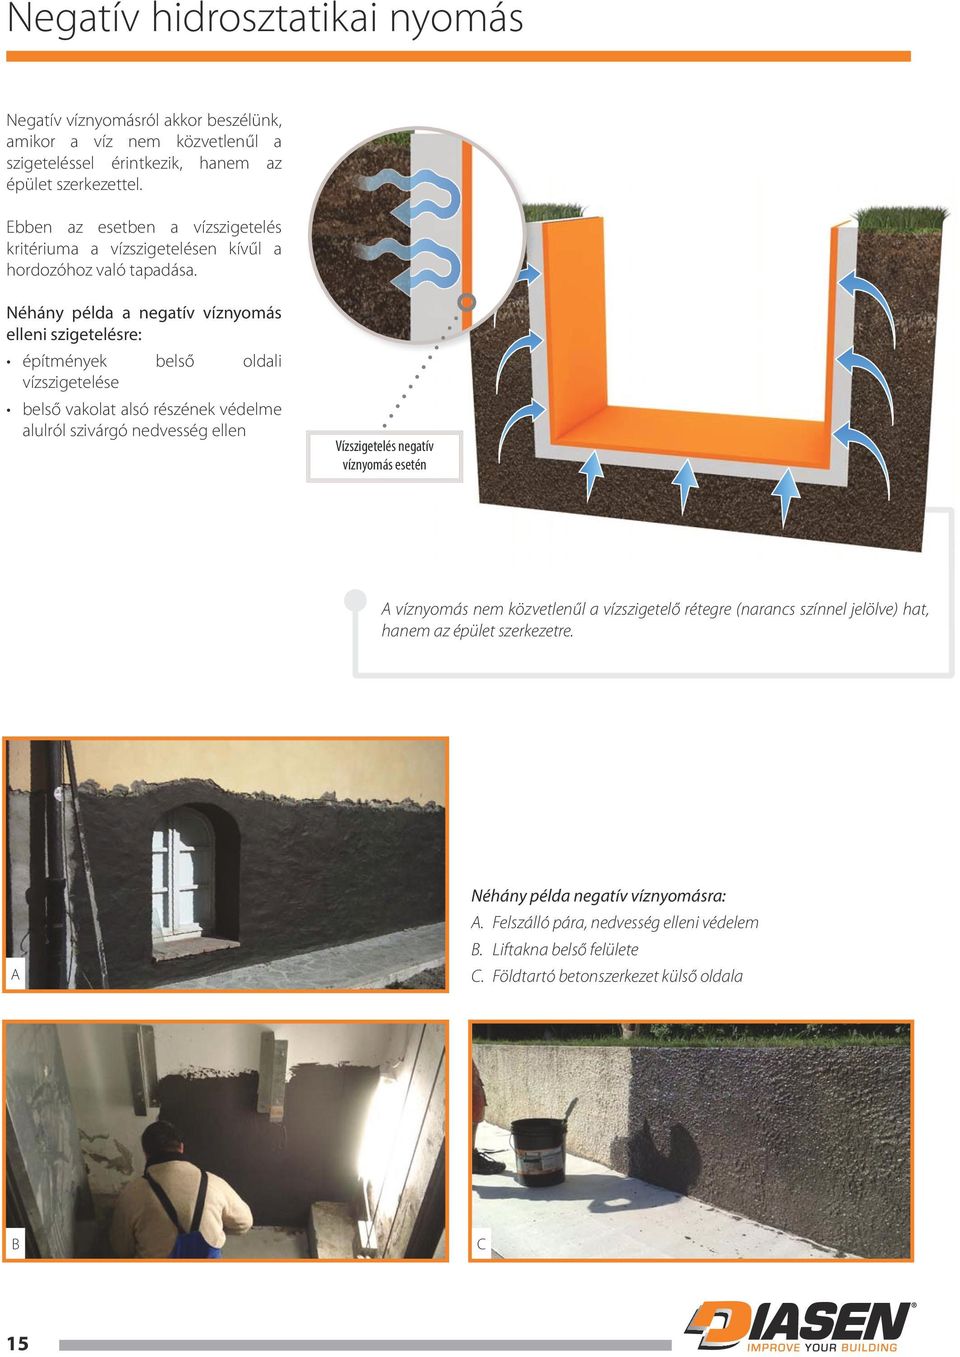 Néhány példa a negatív víznyomás elleni szigetelésre: építmények belső oldali vízszigetelése belső vakolat alsó részének védelme alulról szivárgó nedvesség ellen Vízszigetelés